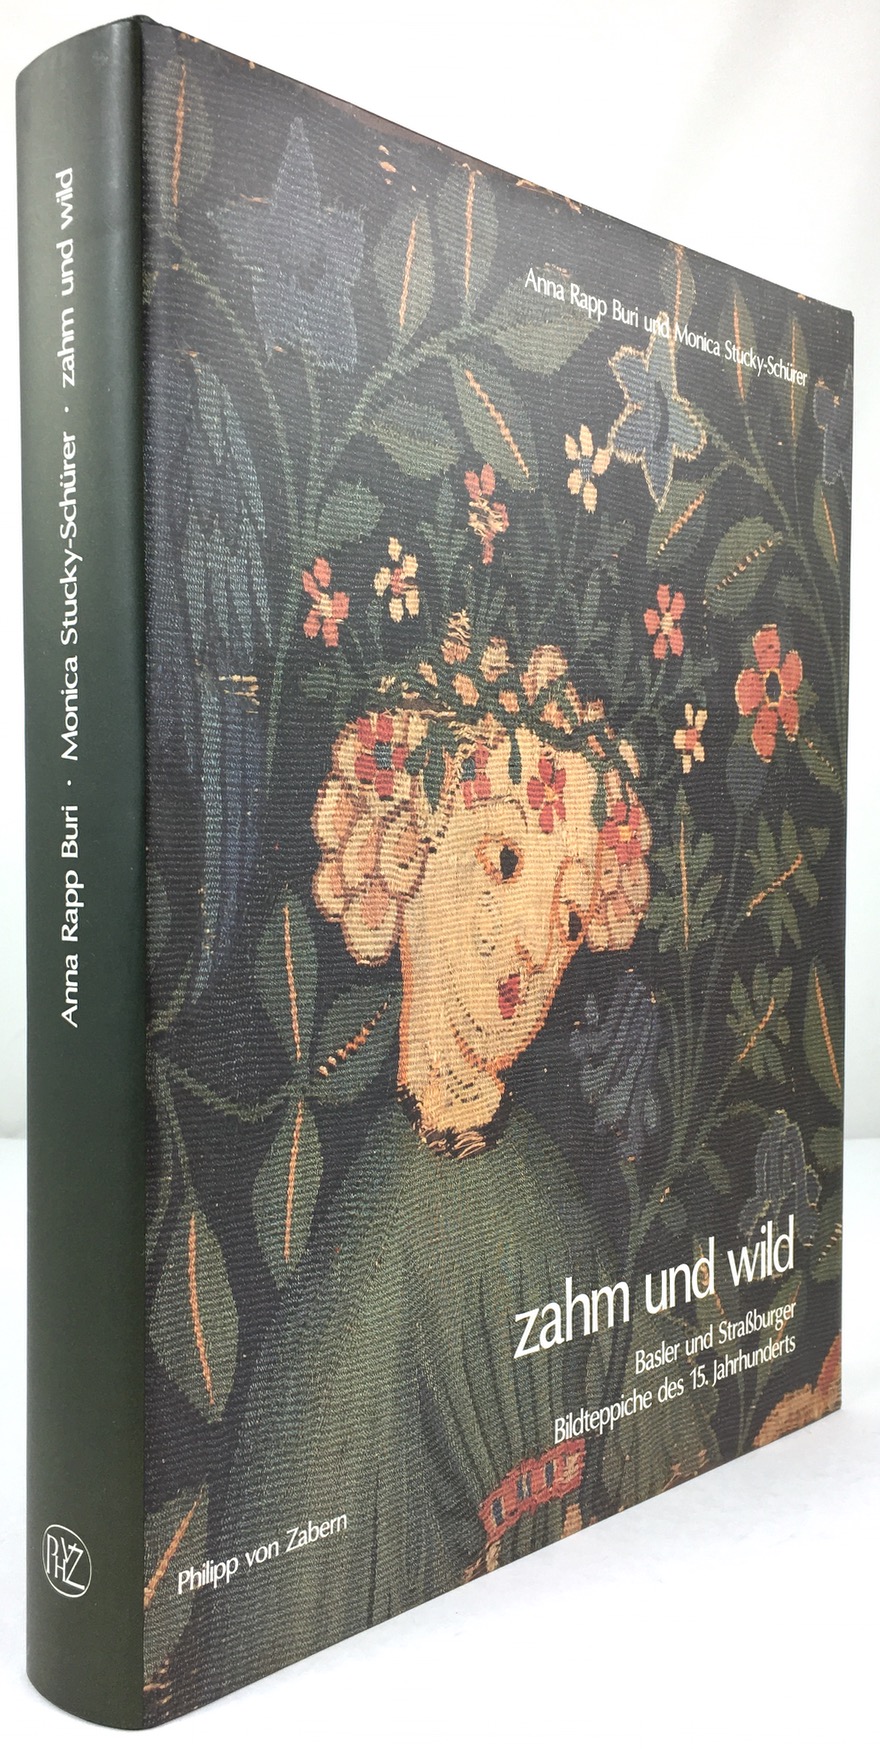 zahm und wild. Basler und Straßburger Bildteppiche des 15. Jahrhunderts. - Rapp Buri, Anna und Monica Stucky-Schürer